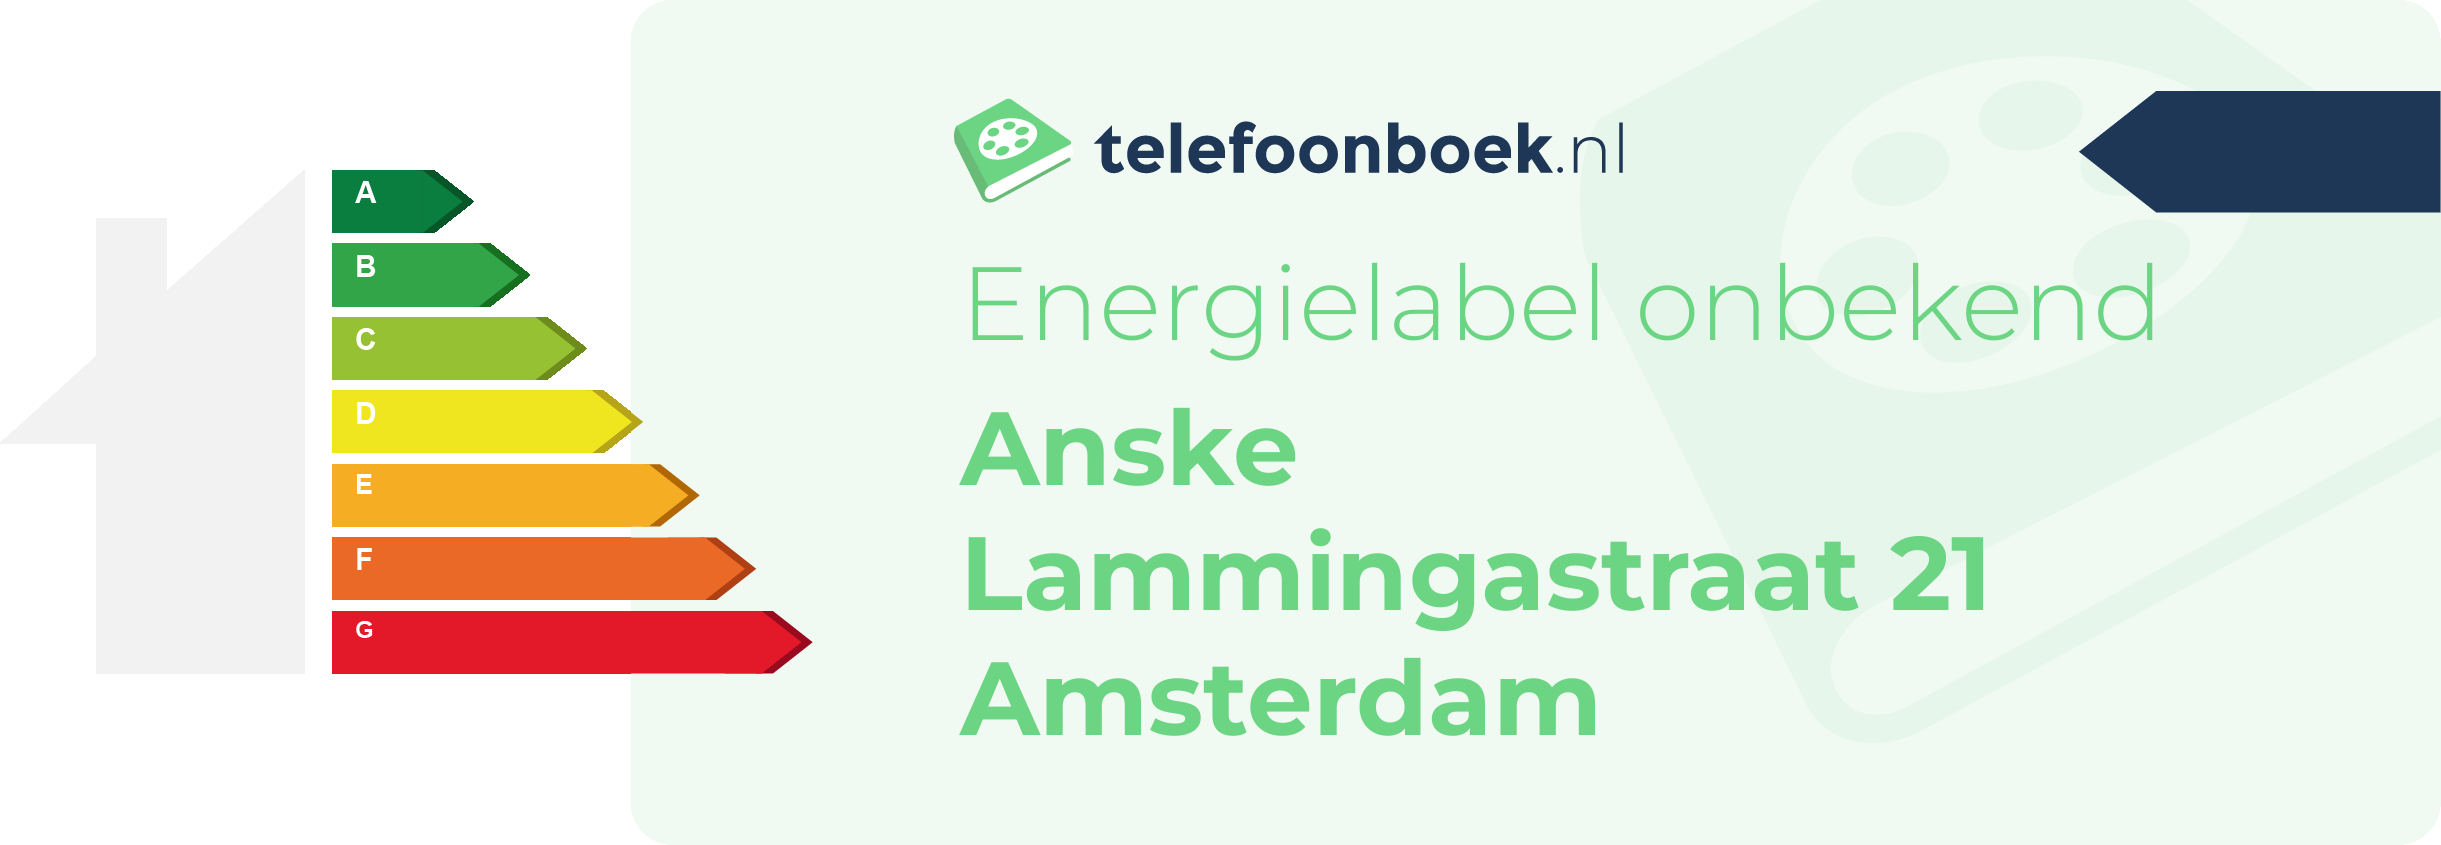 Energielabel Anske Lammingastraat 21 Amsterdam